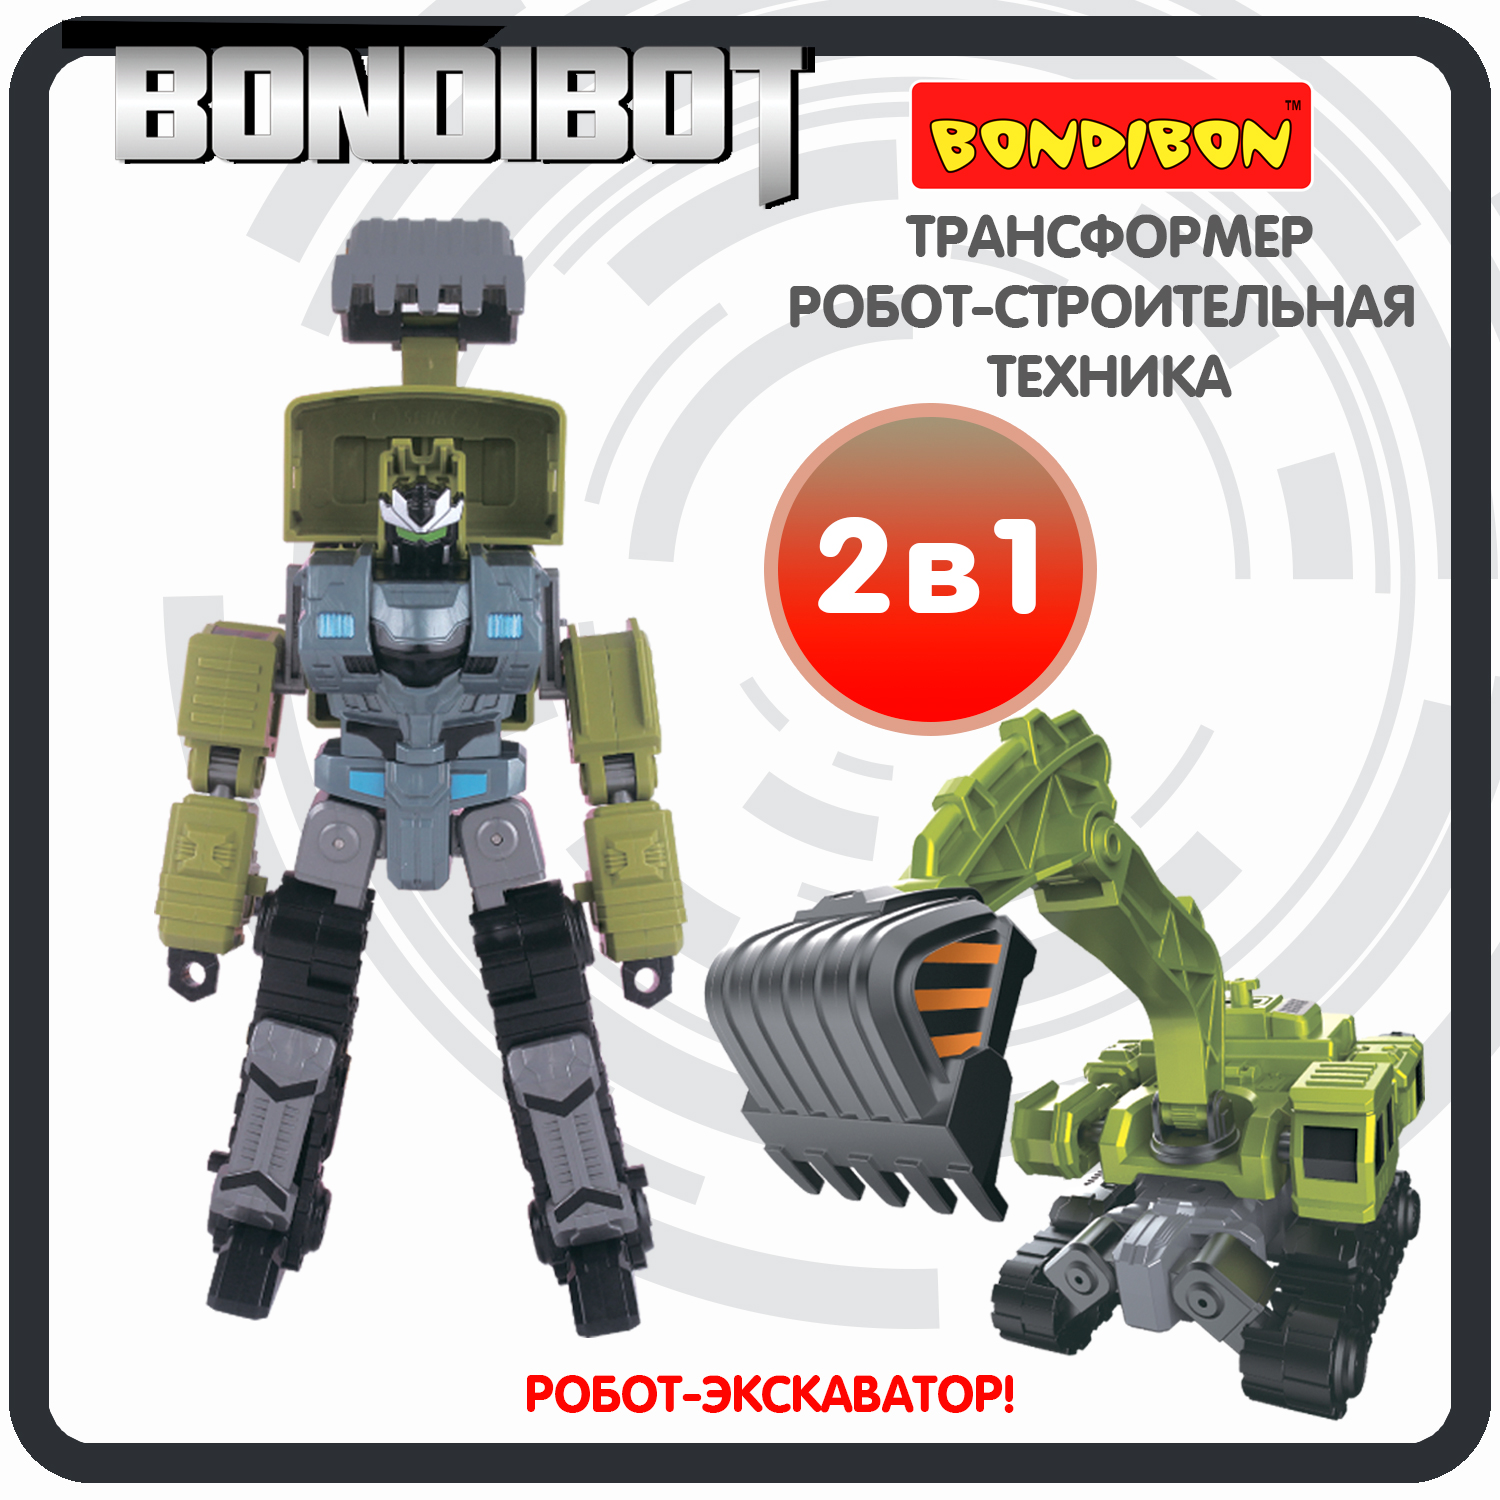 Трансформер робот-строительная техника, 2в1 BONDIBOT Bondibon, экскаватор / ВВ6054 трансформер робот строительная техника 2в1 bondibot bondibon самосвал вв6046